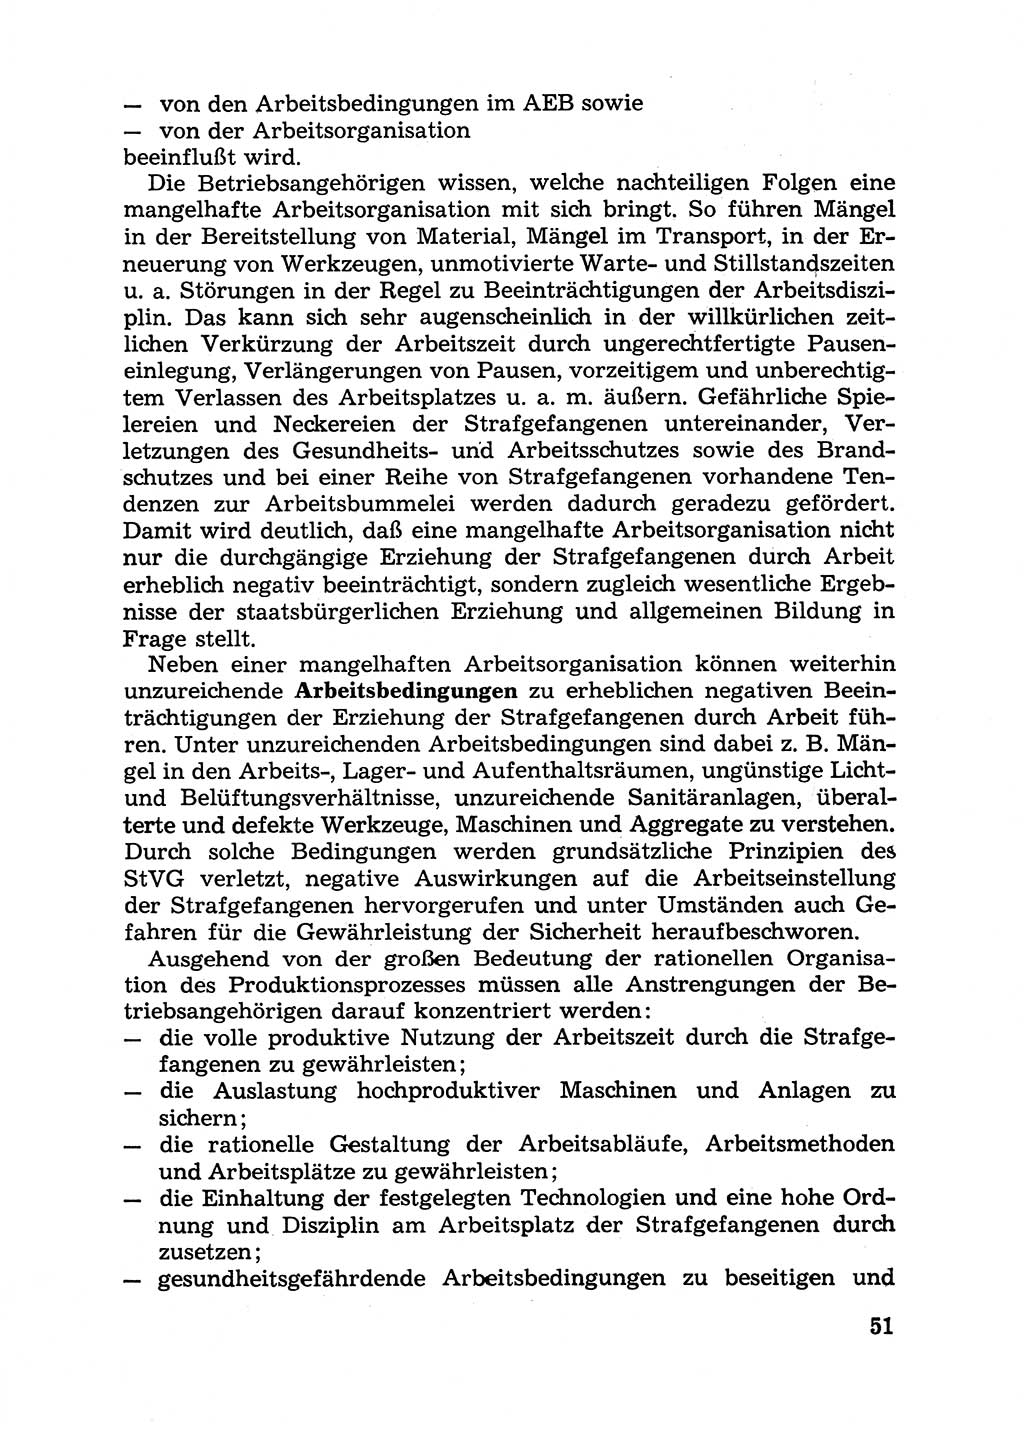 Handbuch für Betriebsangehörige, Abteilung Strafvollzug (SV) [Ministerium des Innern (MdI) Deutsche Demokratische Republik (DDR)] 1981, Seite 51 (Hb. BA Abt. SV MdI DDR 1981, S. 51)